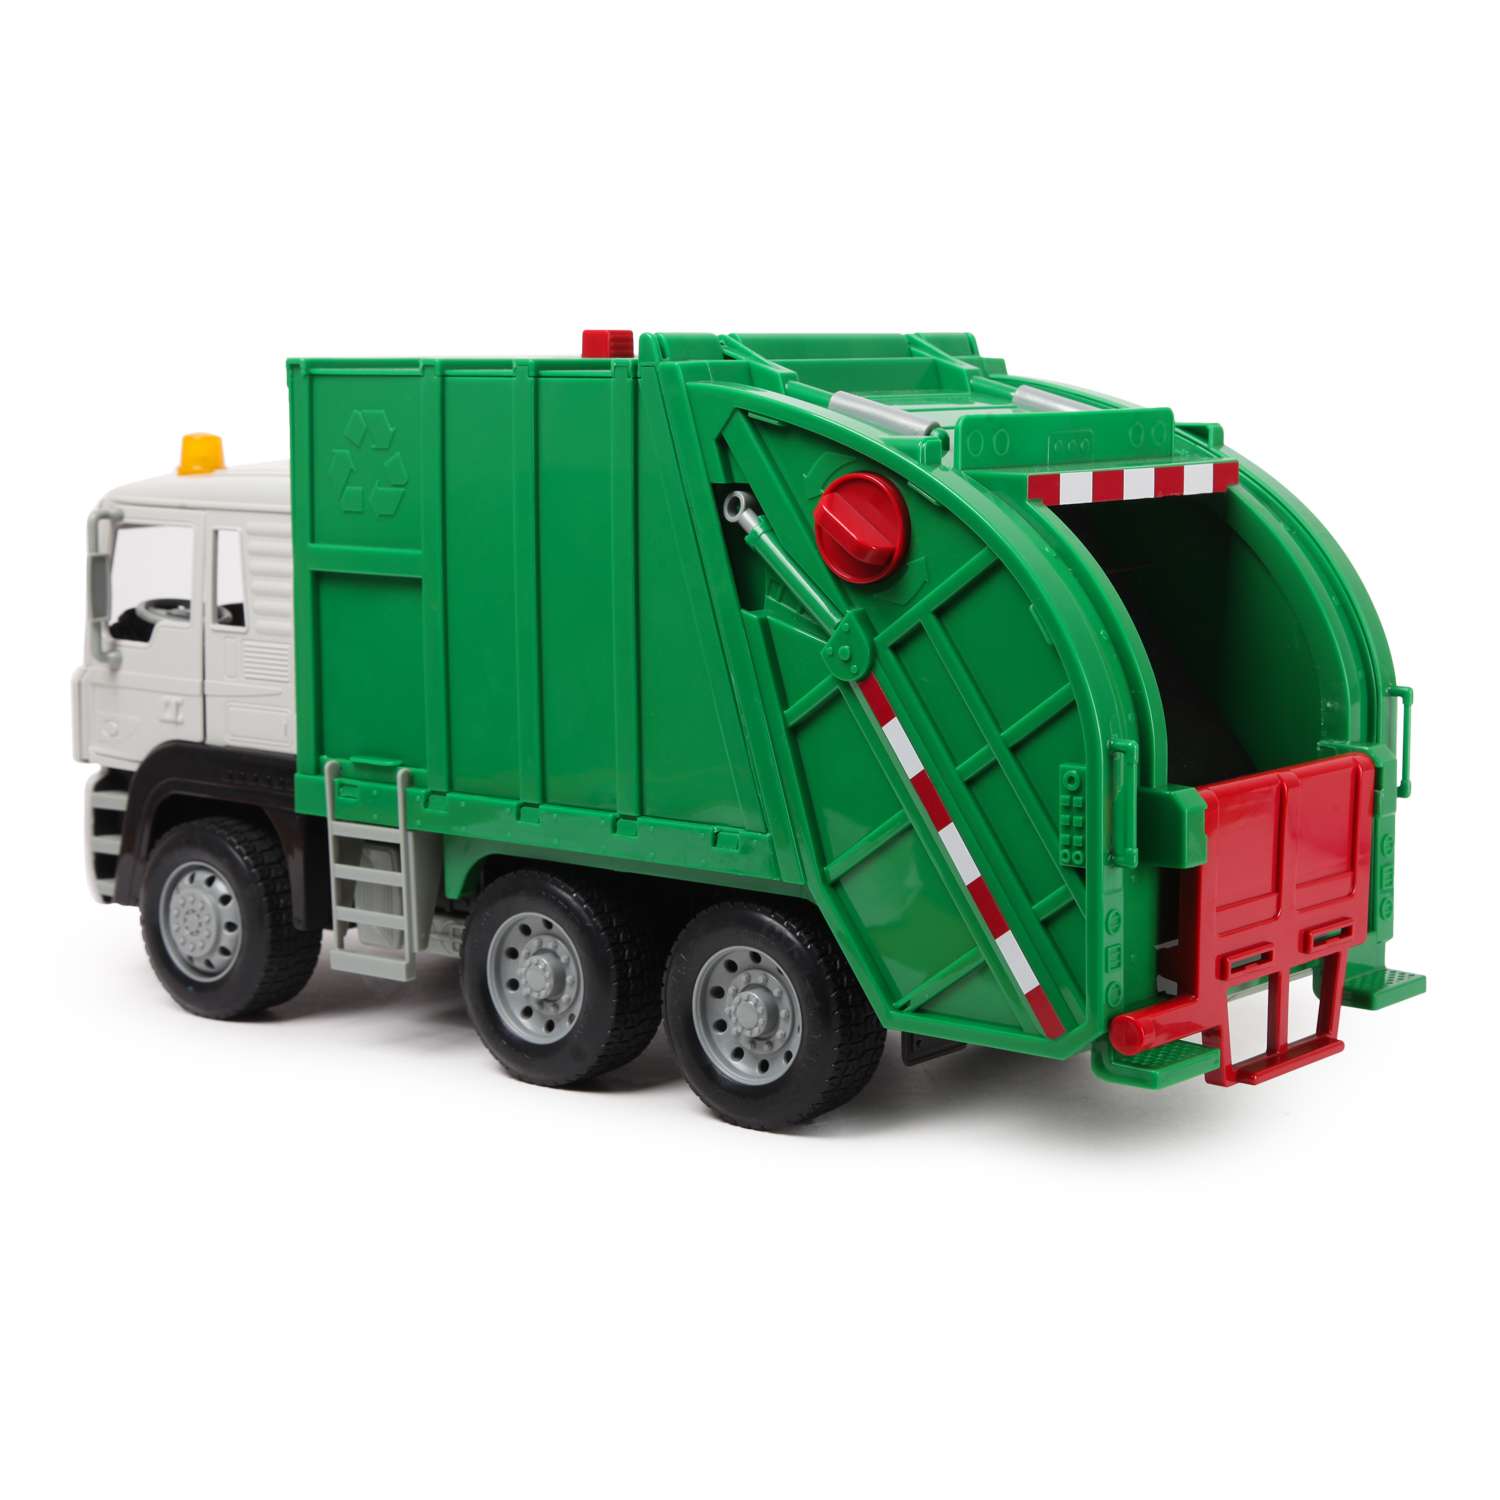 Мусоровоз зеленый. Технопарк КАМАЗ мусоровоз зеленый. Мусоровоз Driven. Машина Driven мусоровоз. Мусоровоз зеленый кринж.